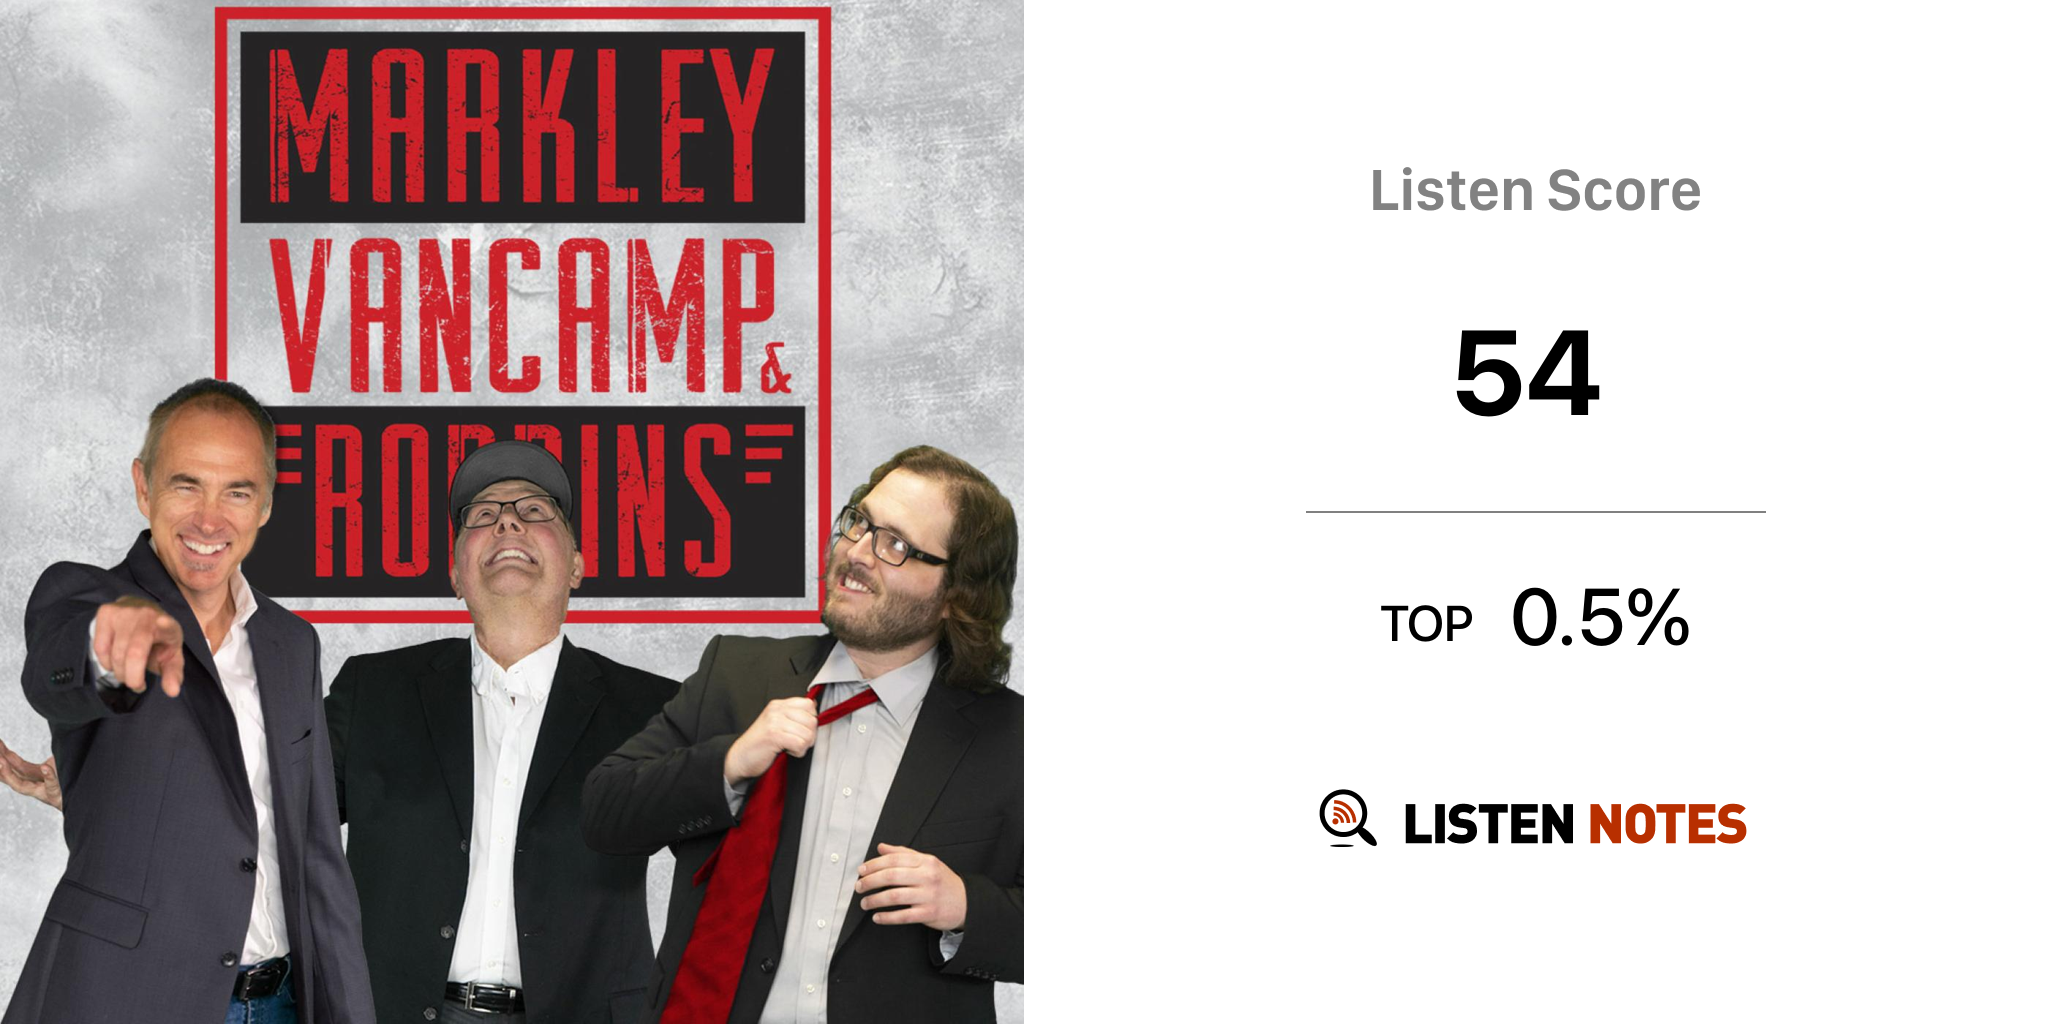 Markley, van Camp and Robbins (podcast) 550 KTSA Listen Notes